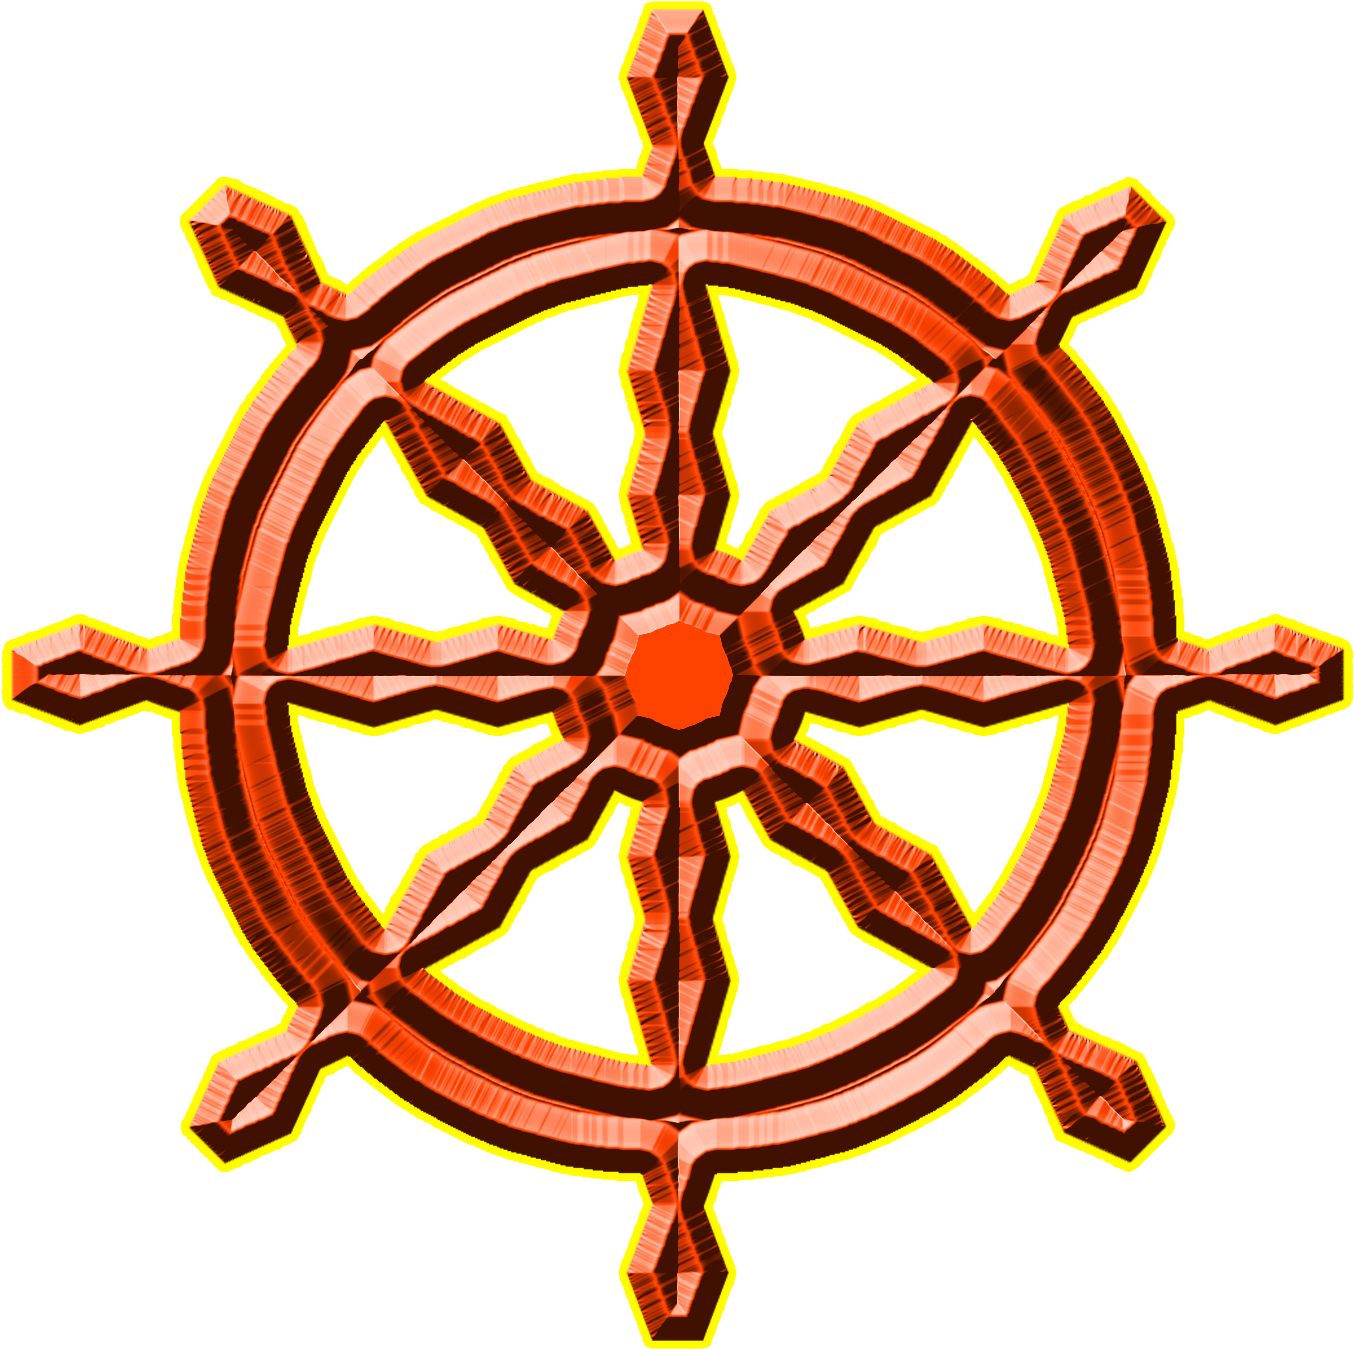 Ship's Wheel Anchor Boat Clip Art - Ship's Wheel Anchor Boat Clip Art (1500x1500)